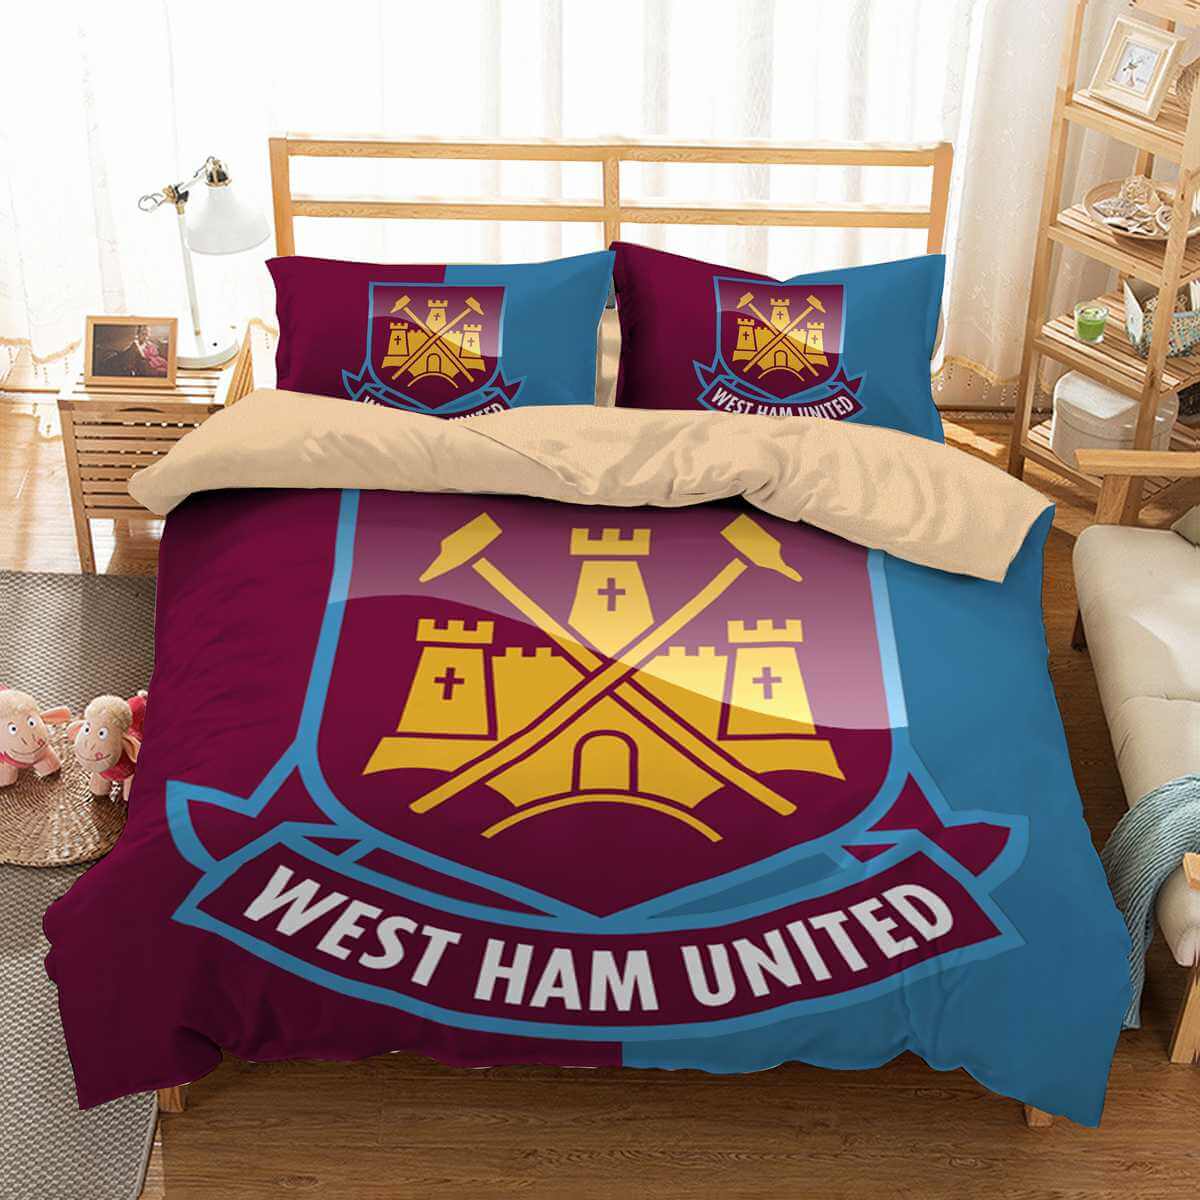 3d Customize West Ham United Bedding Set Duvet Cover Set Bedroom